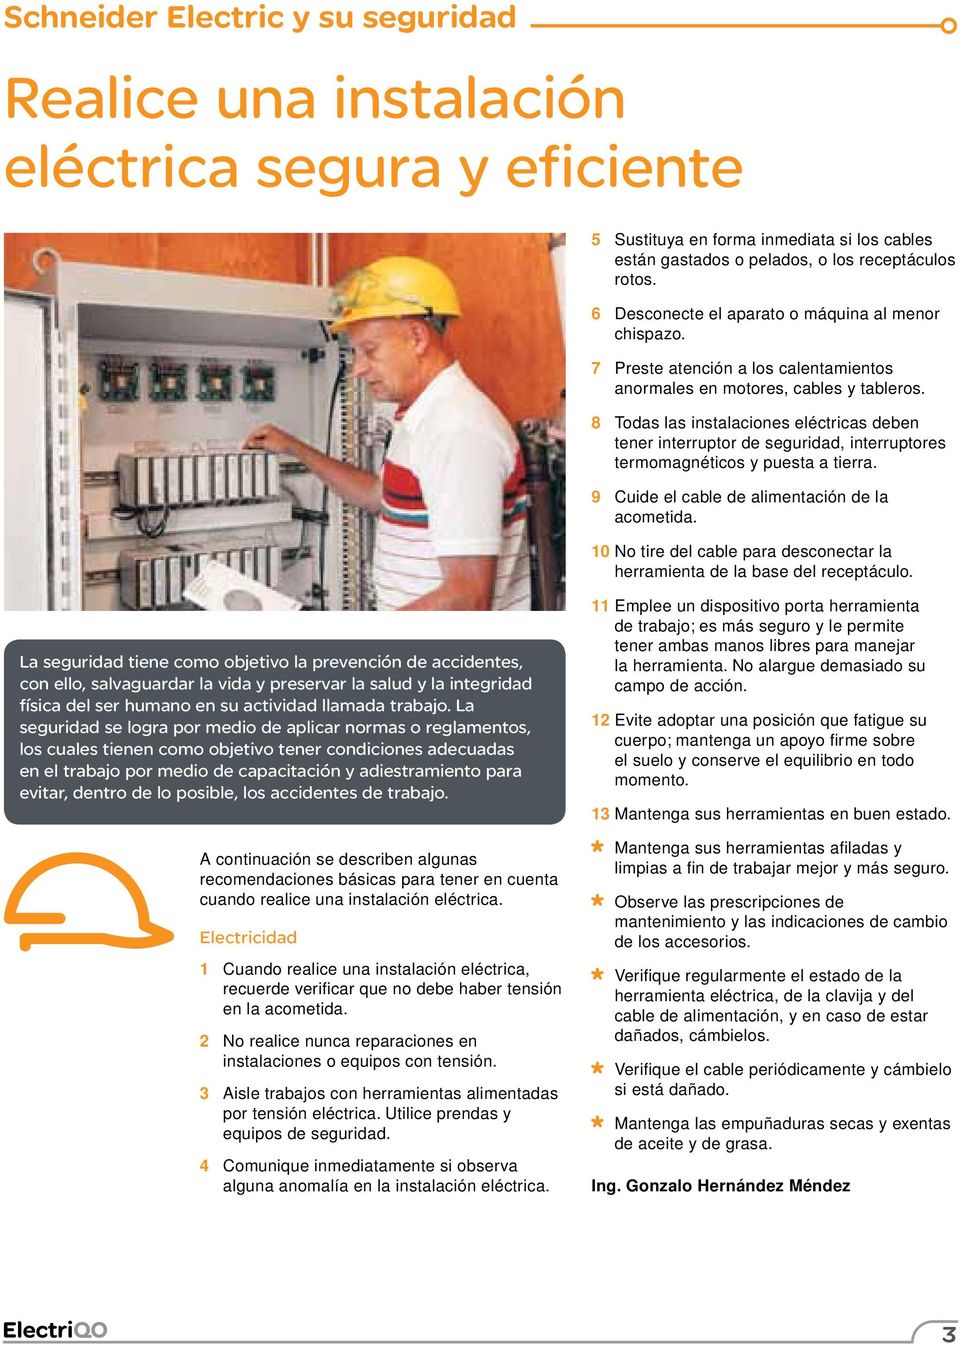 8 Todas las instalaciones eléctricas deben tener interruptor de seguridad, interruptores termomagnéticos y puesta a tierra. 9 Cuide el cable de alimentación de la acometida.